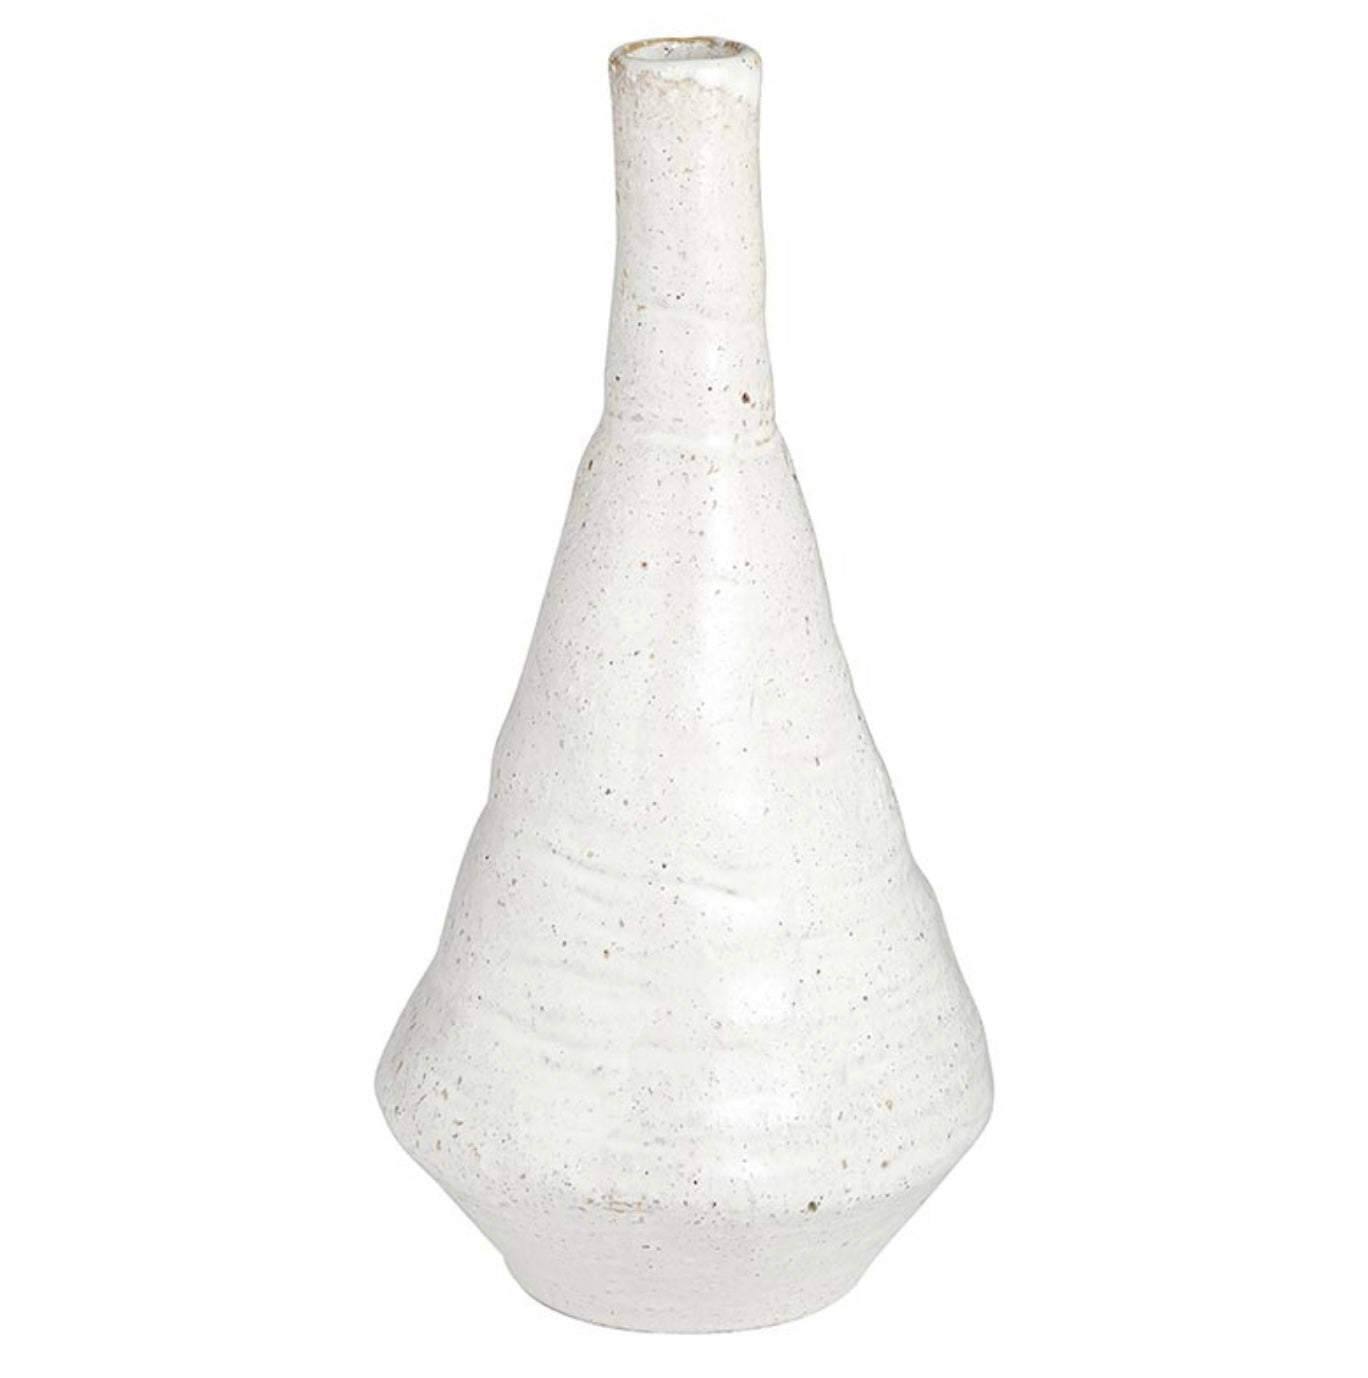 Extra Large organic vase